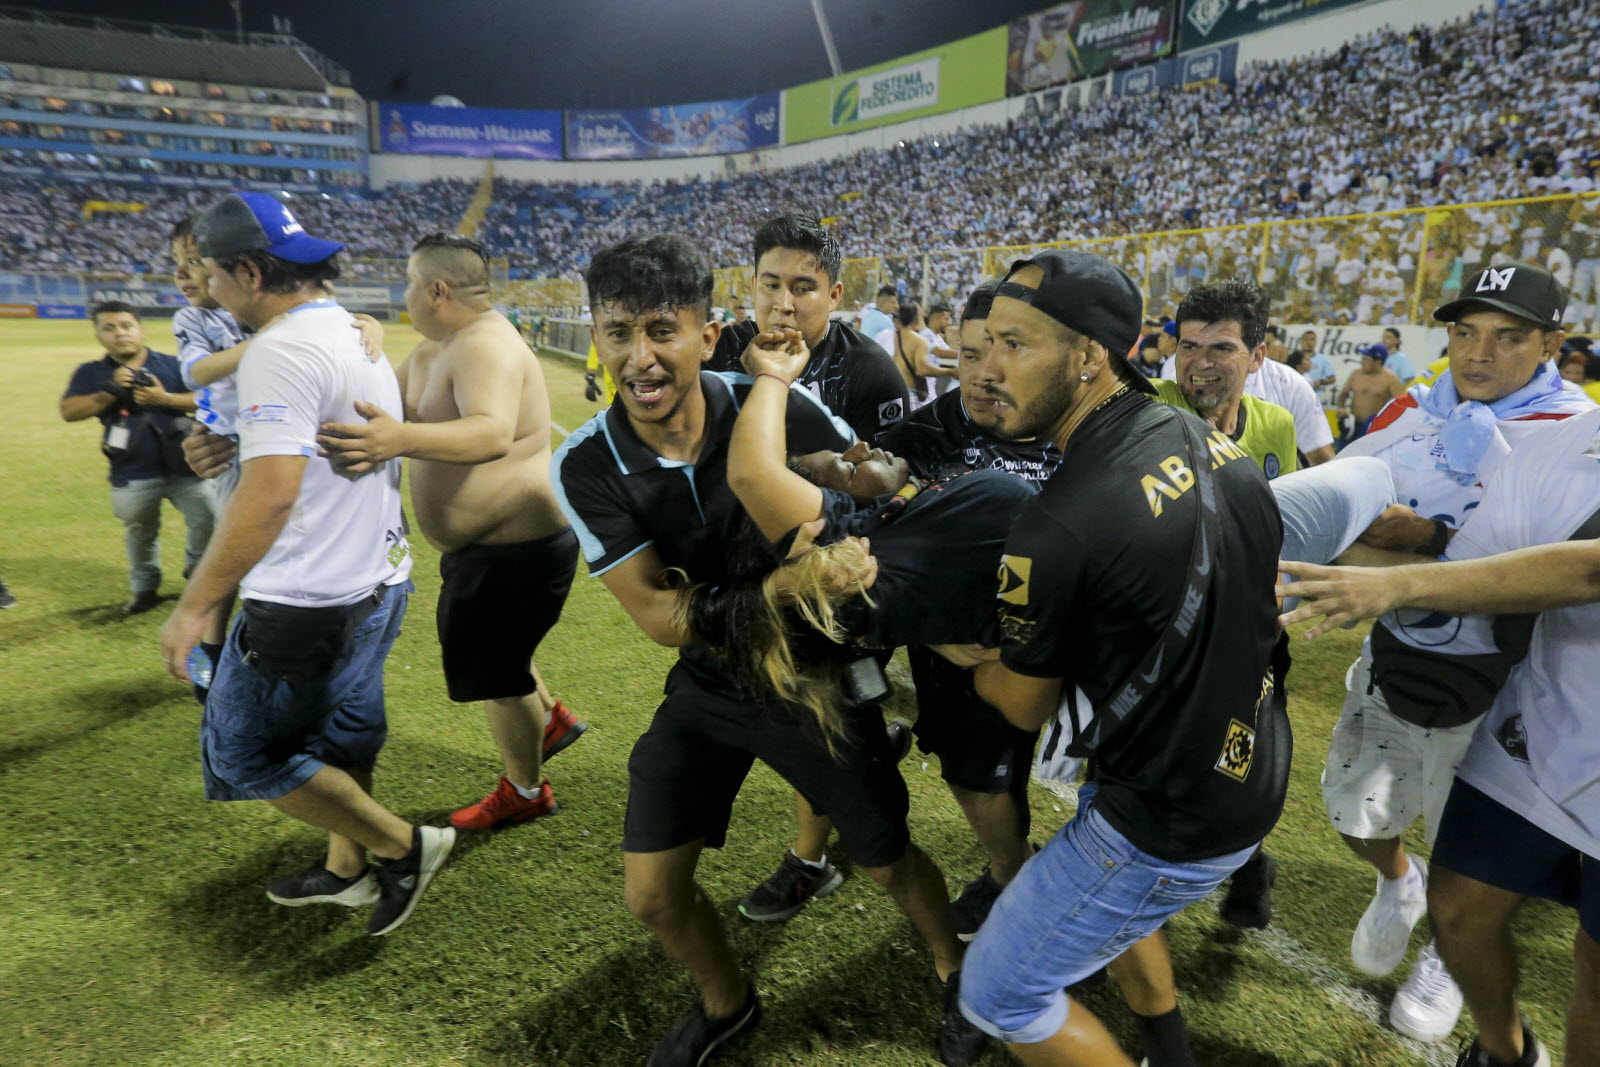 السلفادور ينهي بطولة كرة القدم قبل أوانها بعد حادثة التدافع الدموية